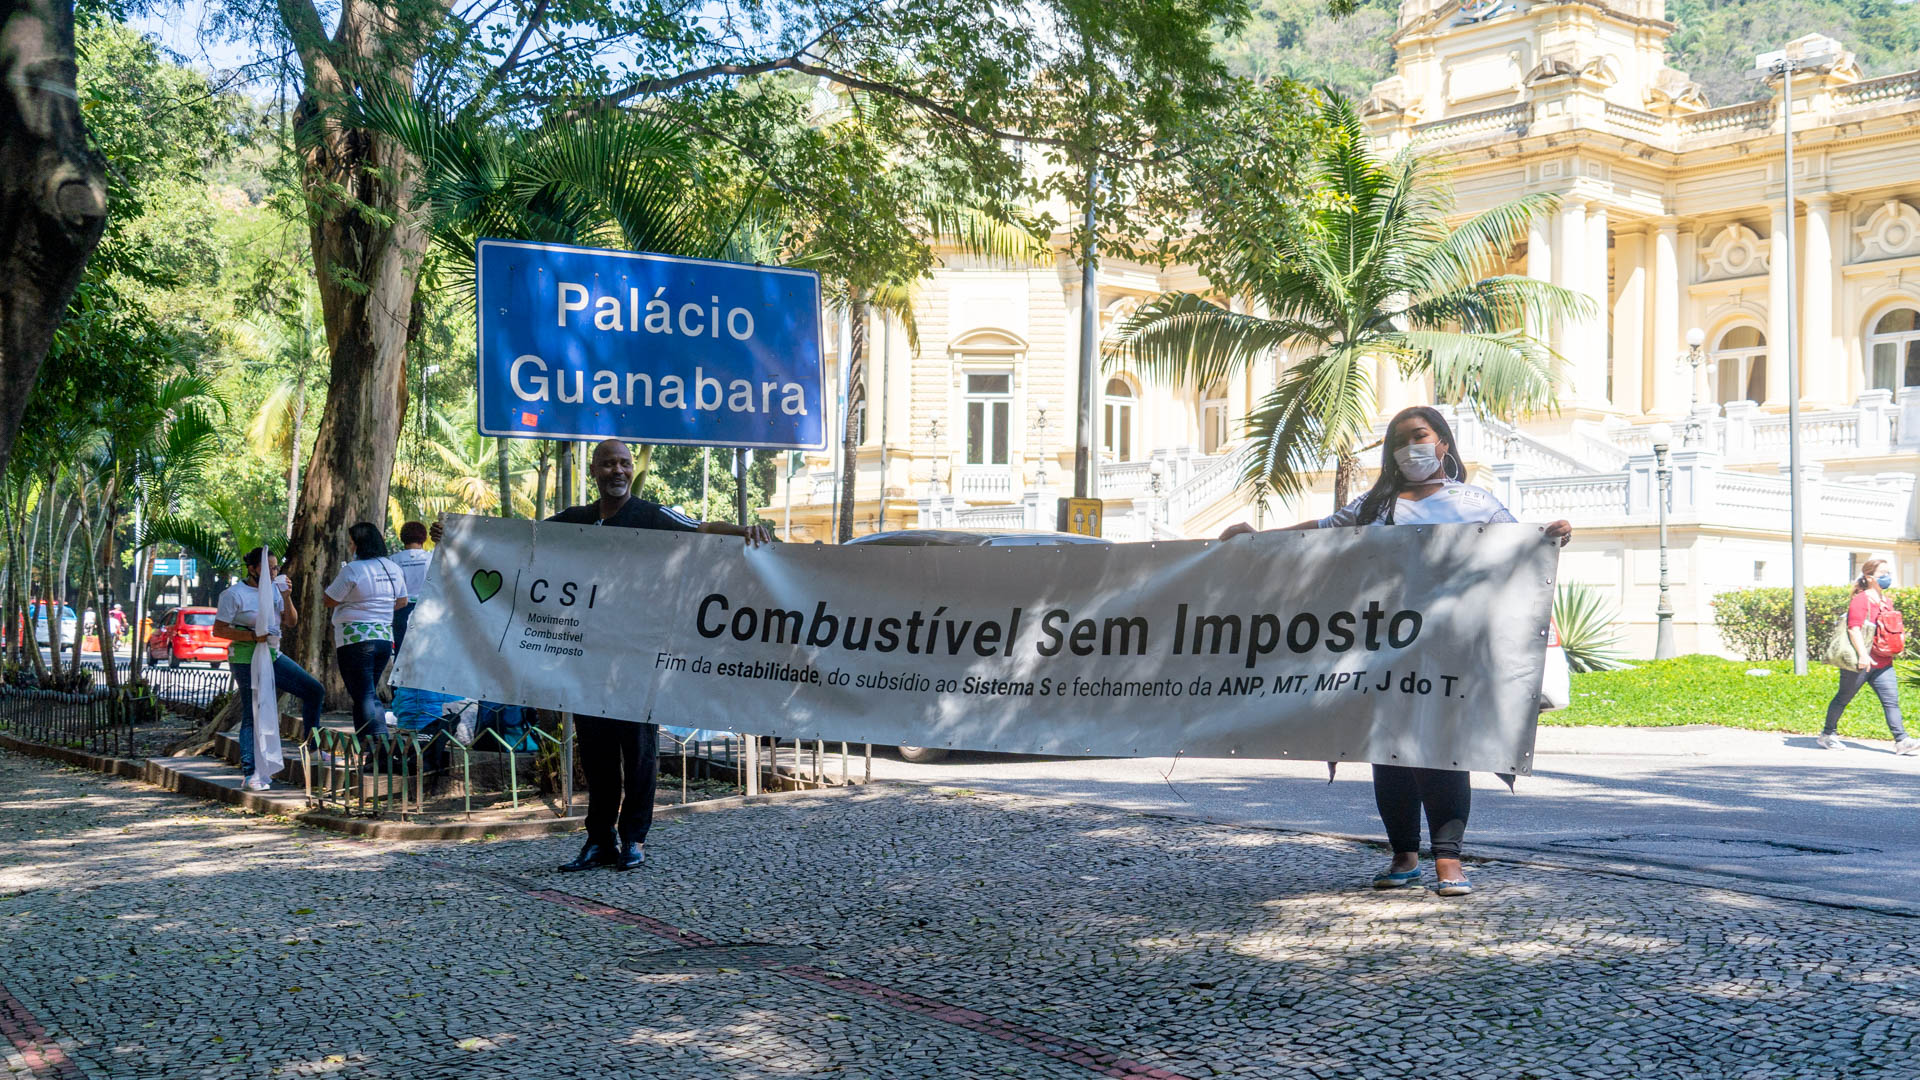 manifestação com faixa do combustivel sem imposto na porta do palacio guanabara